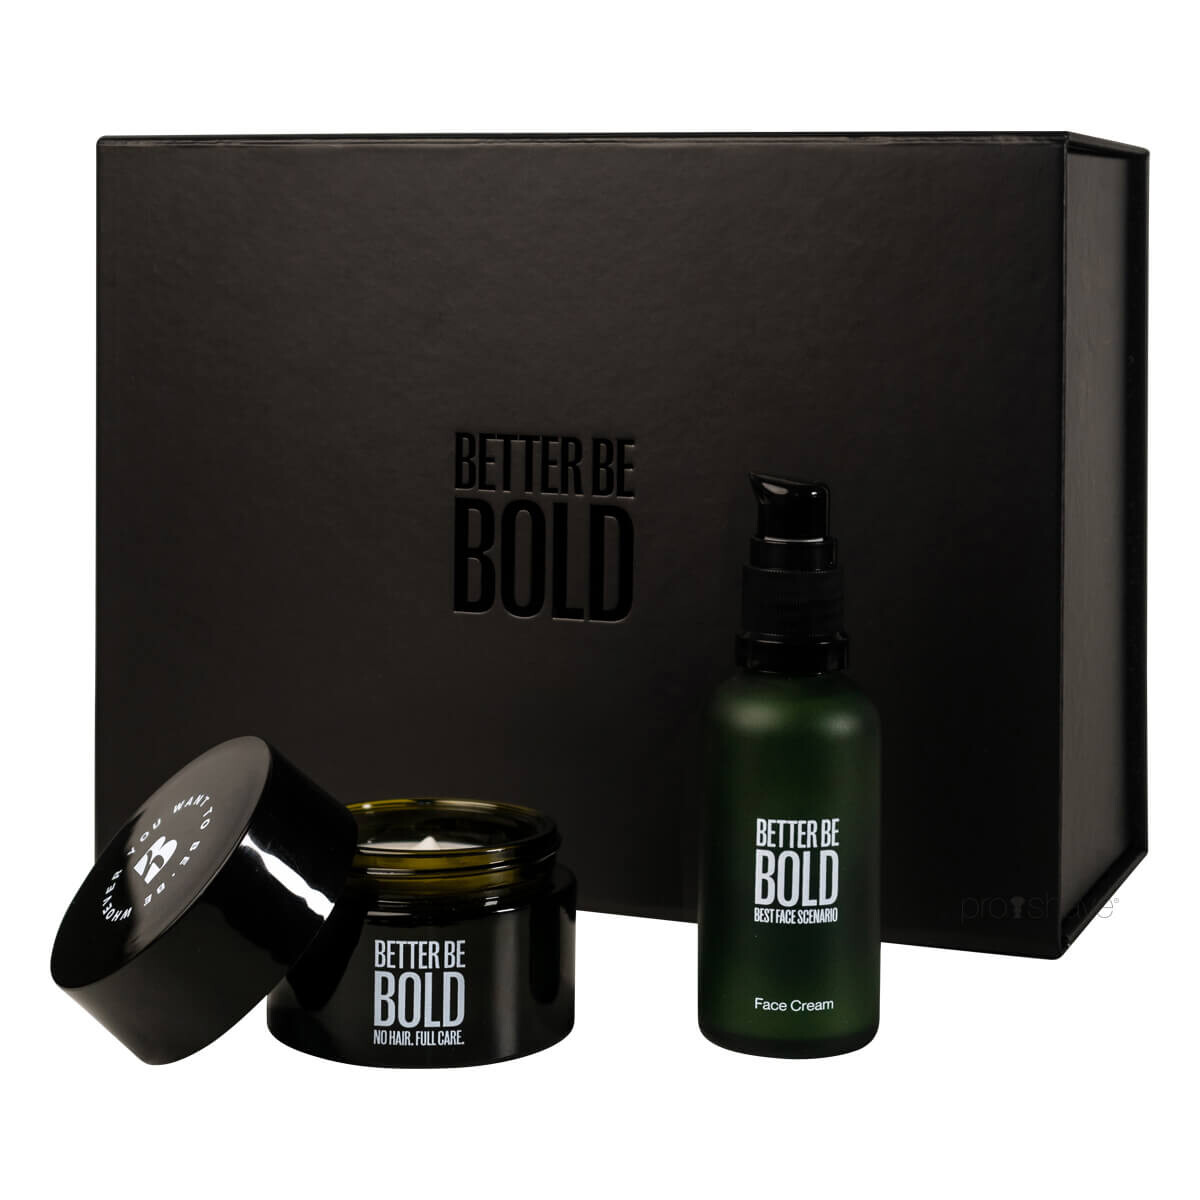 Billede af Better Be Bold, Gift Box For Bald People (Bald Cream + Best Face)